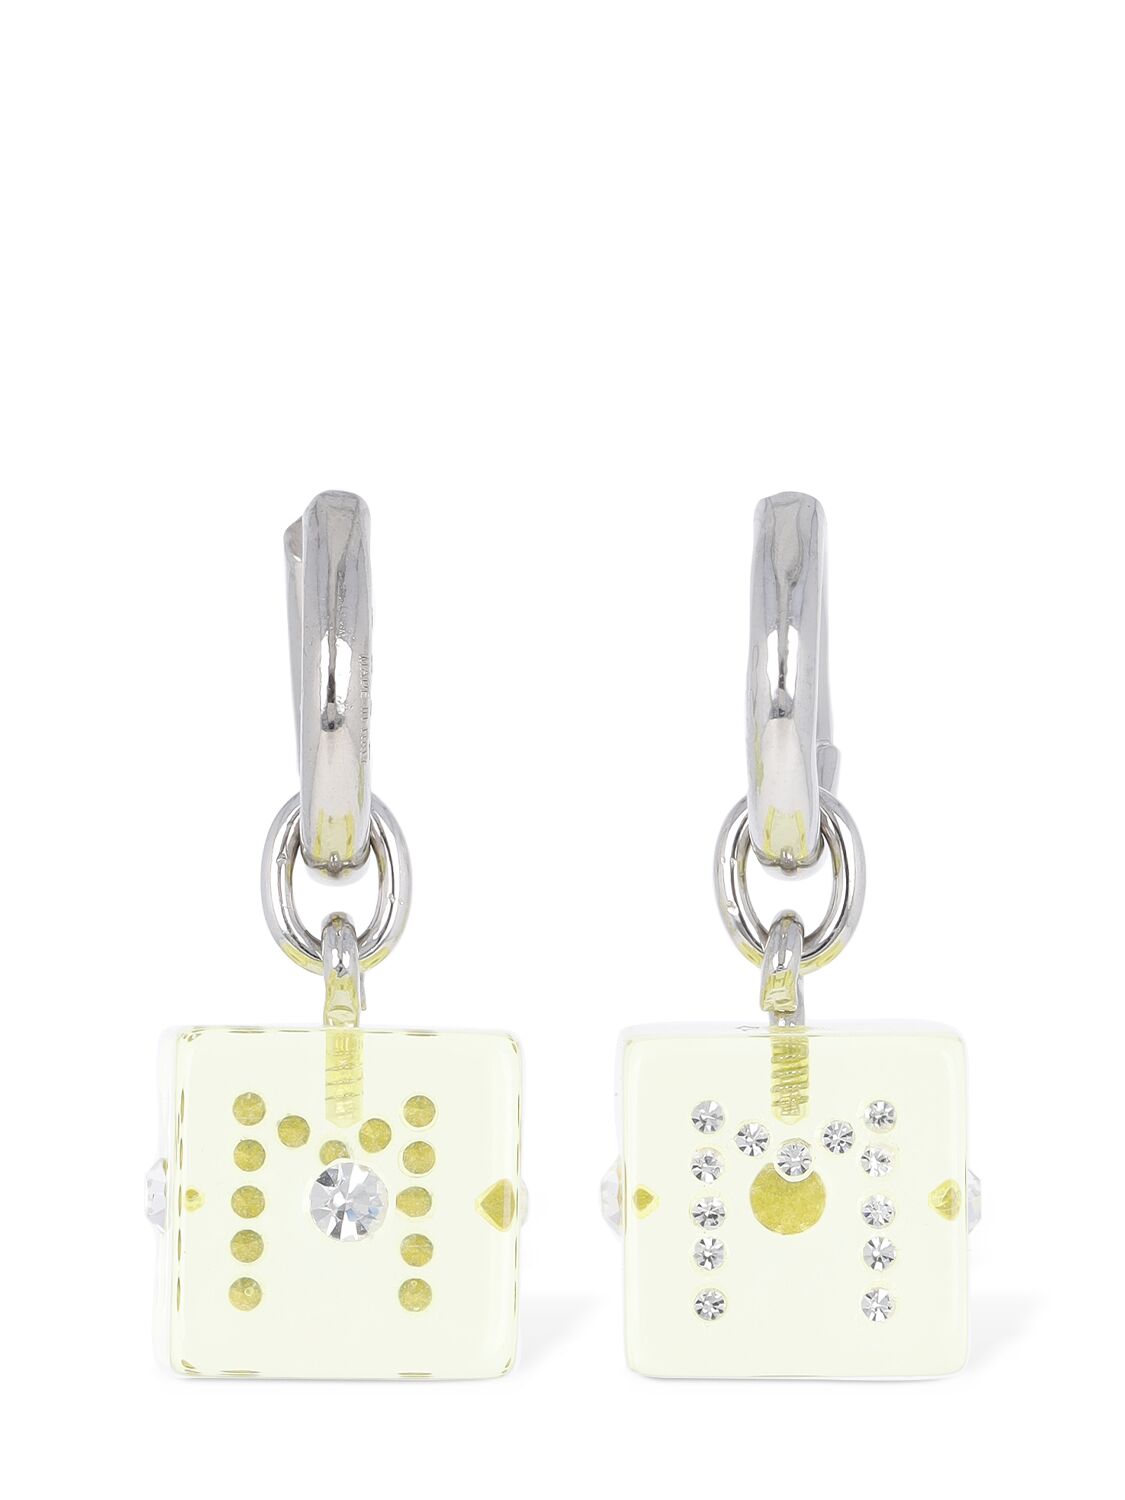 Image of Resin Earrings W/ Dice & Crystal